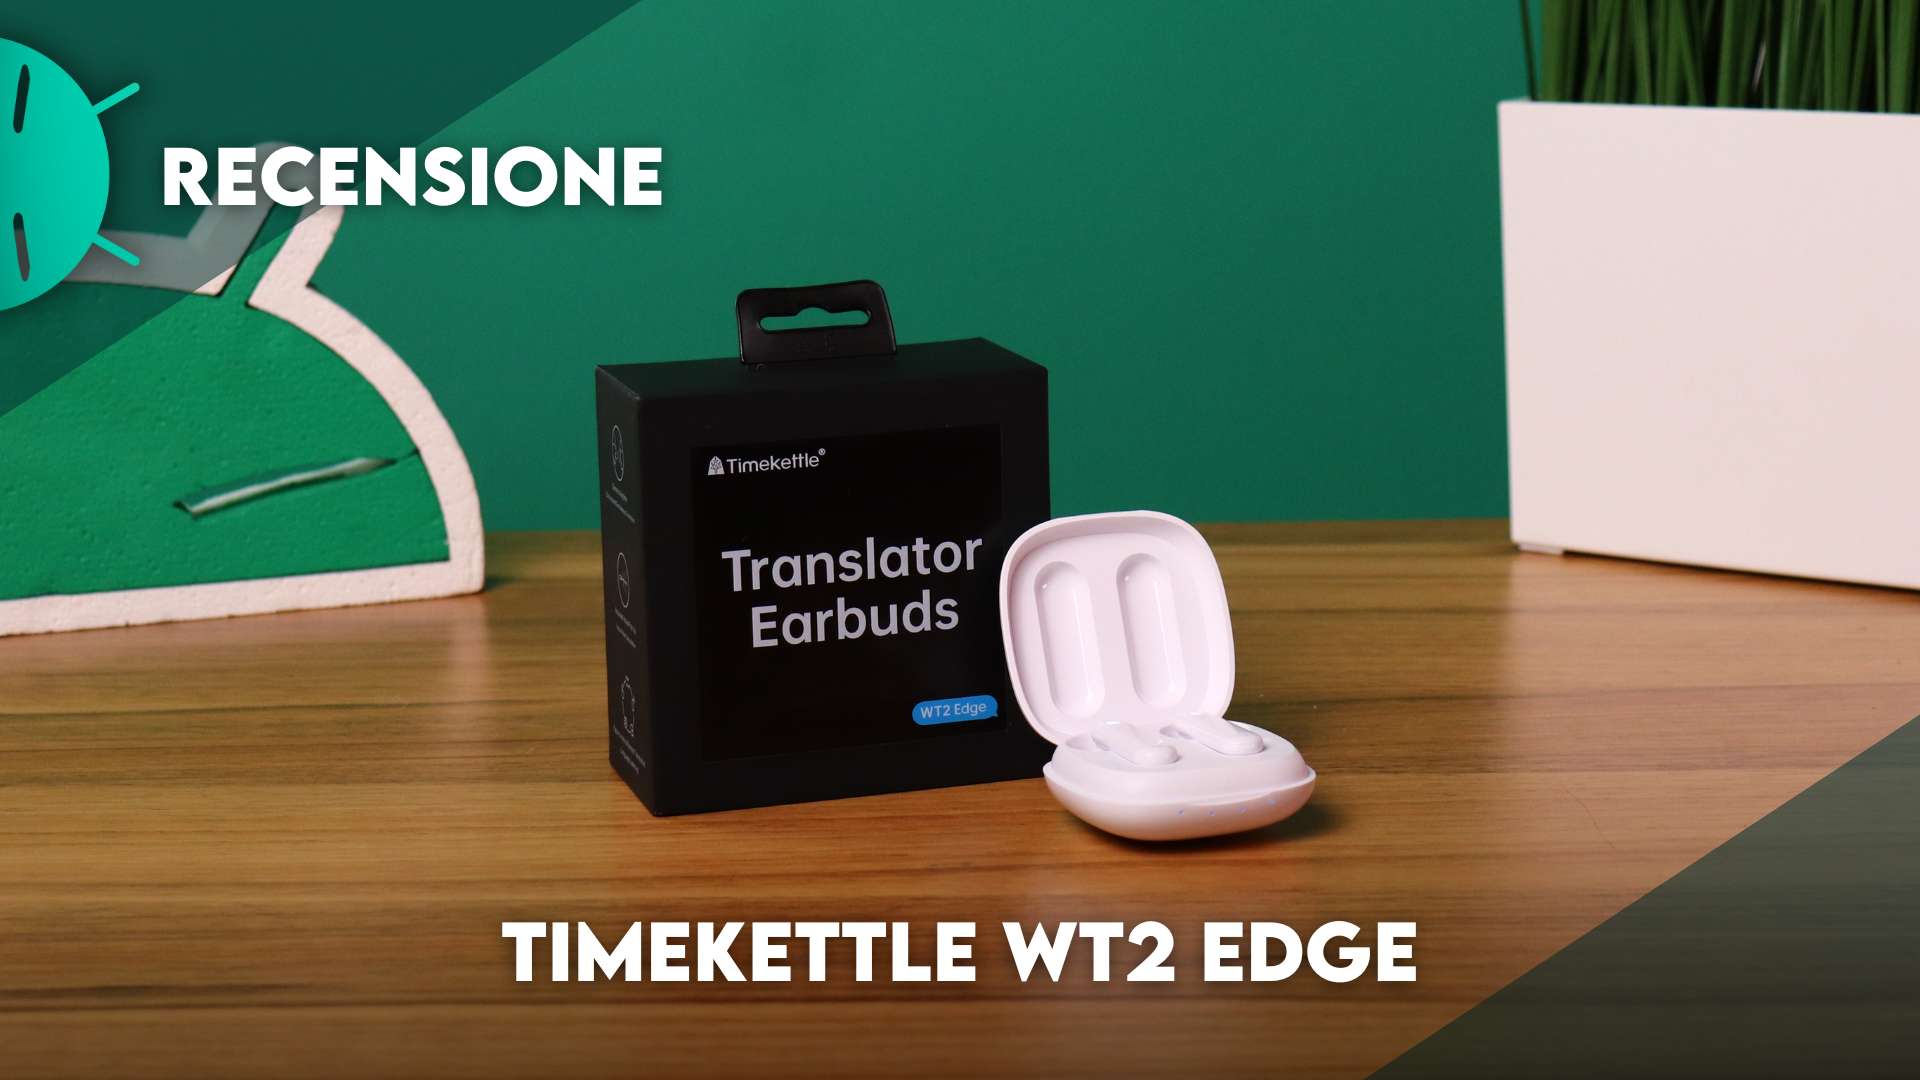 Así son los auriculares traductores WT2 Edge, de Timekettle - El Periódico